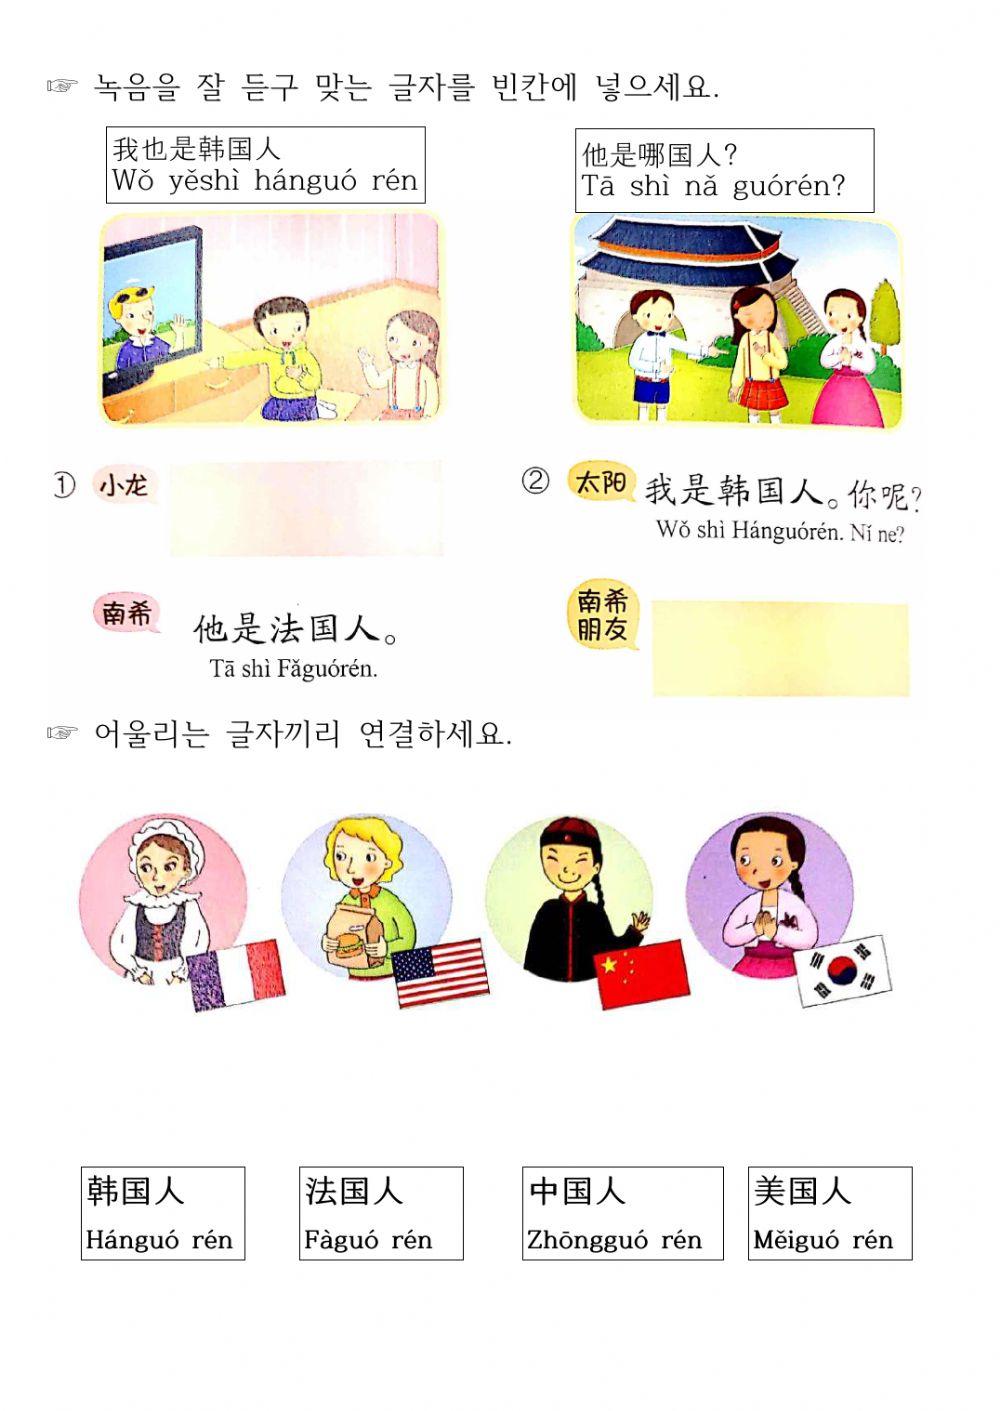 Jrc junir book2-1 (Korean- Chinese)